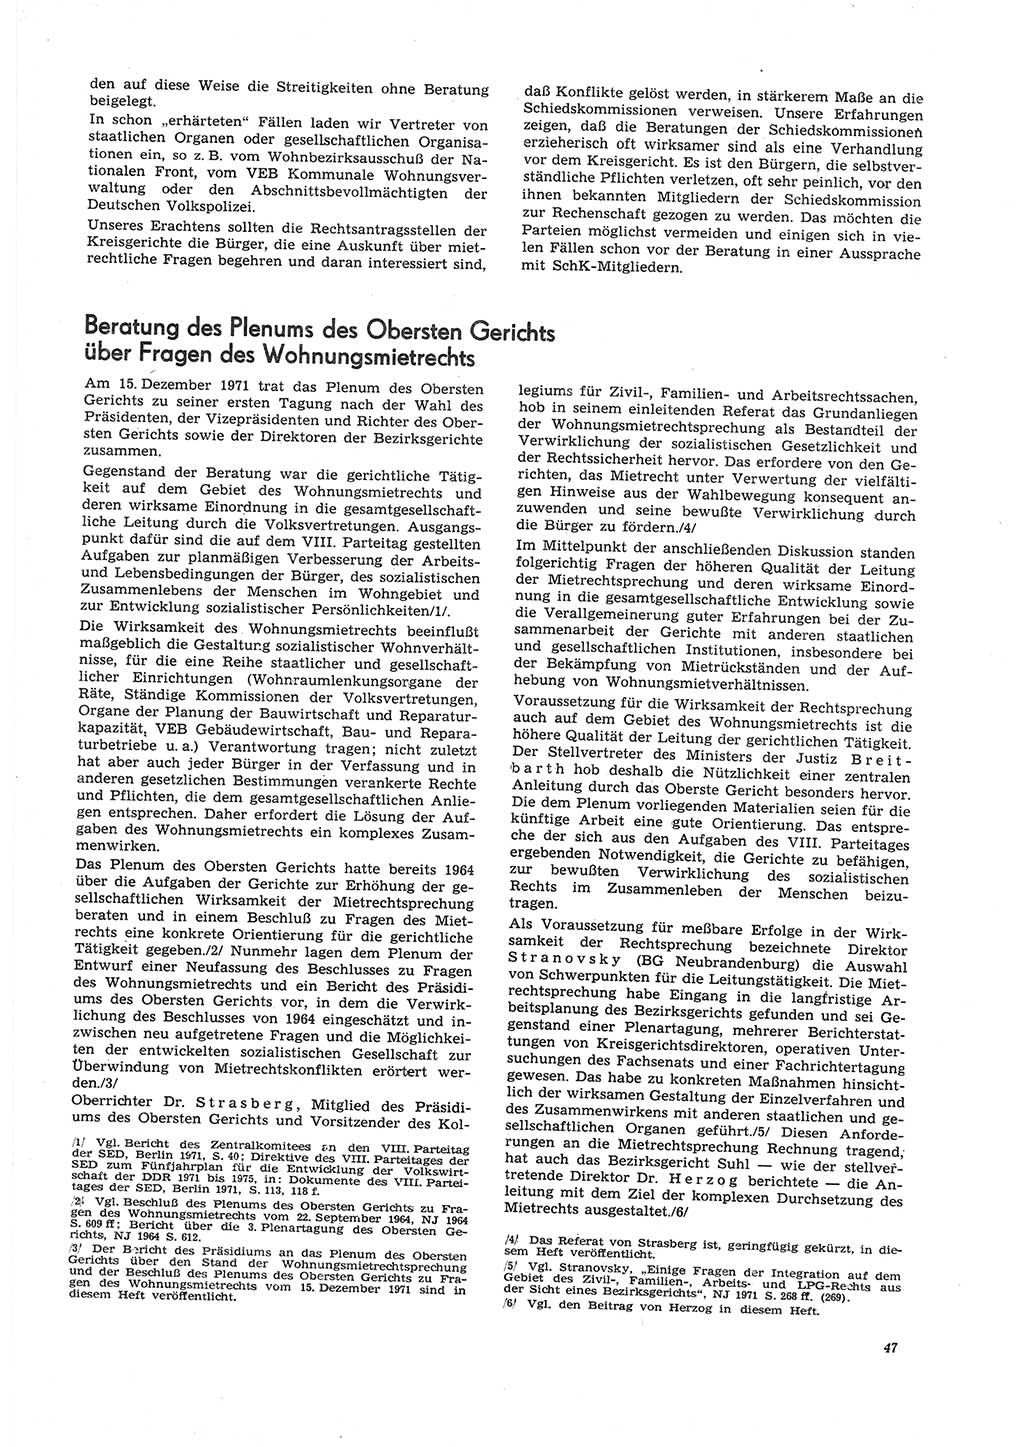 Neue Justiz (NJ), Zeitschrift für Recht und Rechtswissenschaft [Deutsche Demokratische Republik (DDR)], 26. Jahrgang 1972, Seite 47 (NJ DDR 1972, S. 47)